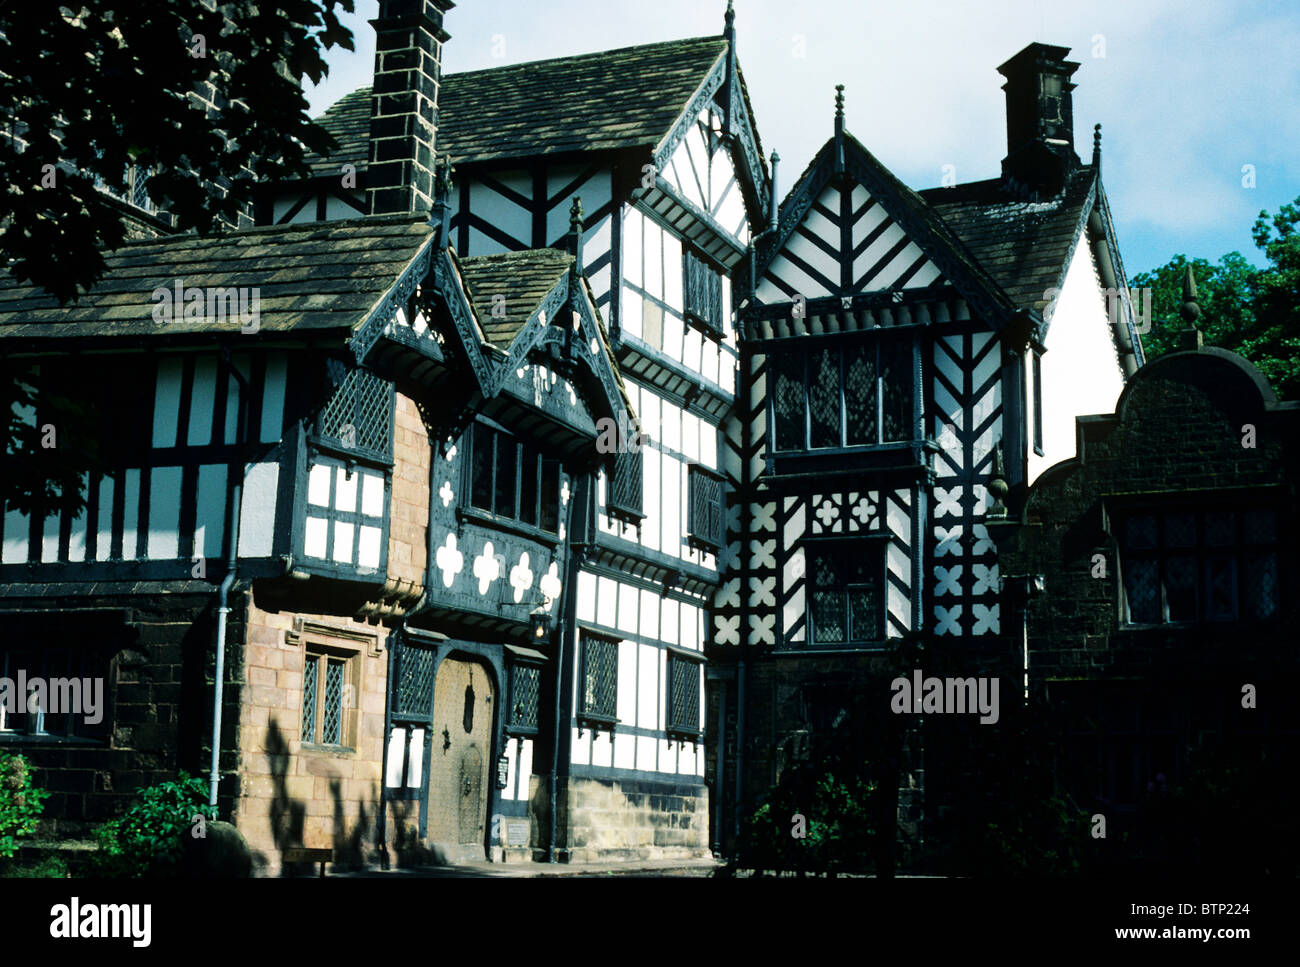 Turton Tower, Lancashire, Inglaterra casa señorial de estilo Tudor Inglés casas arquitectura encofrado en blanco y negro Foto de stock